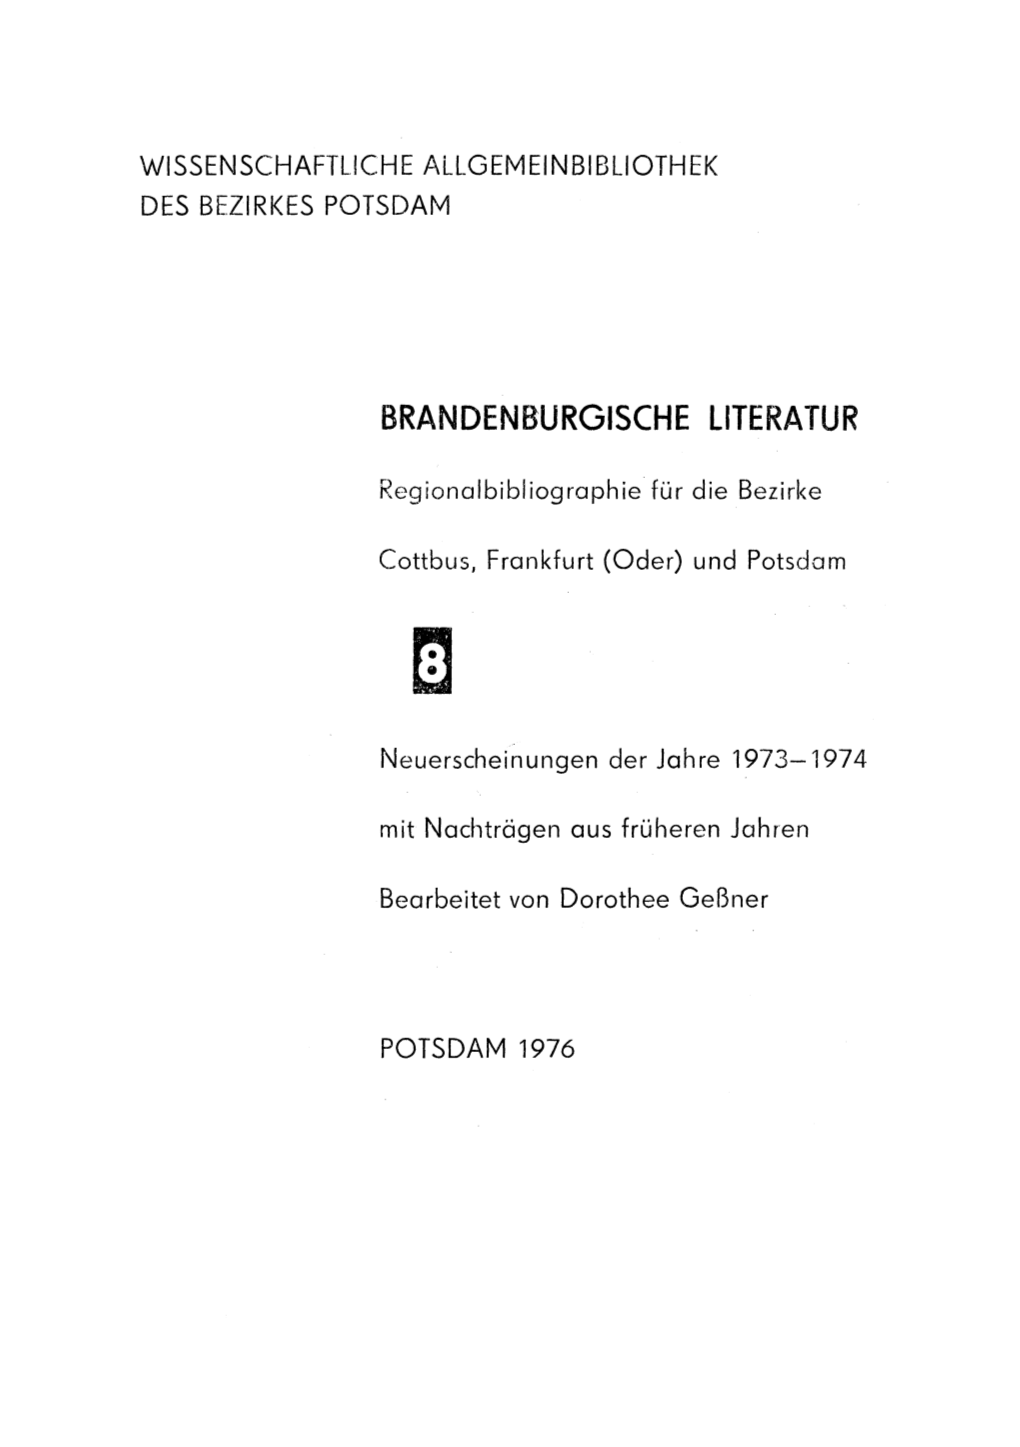 Brandenburgische Literatur